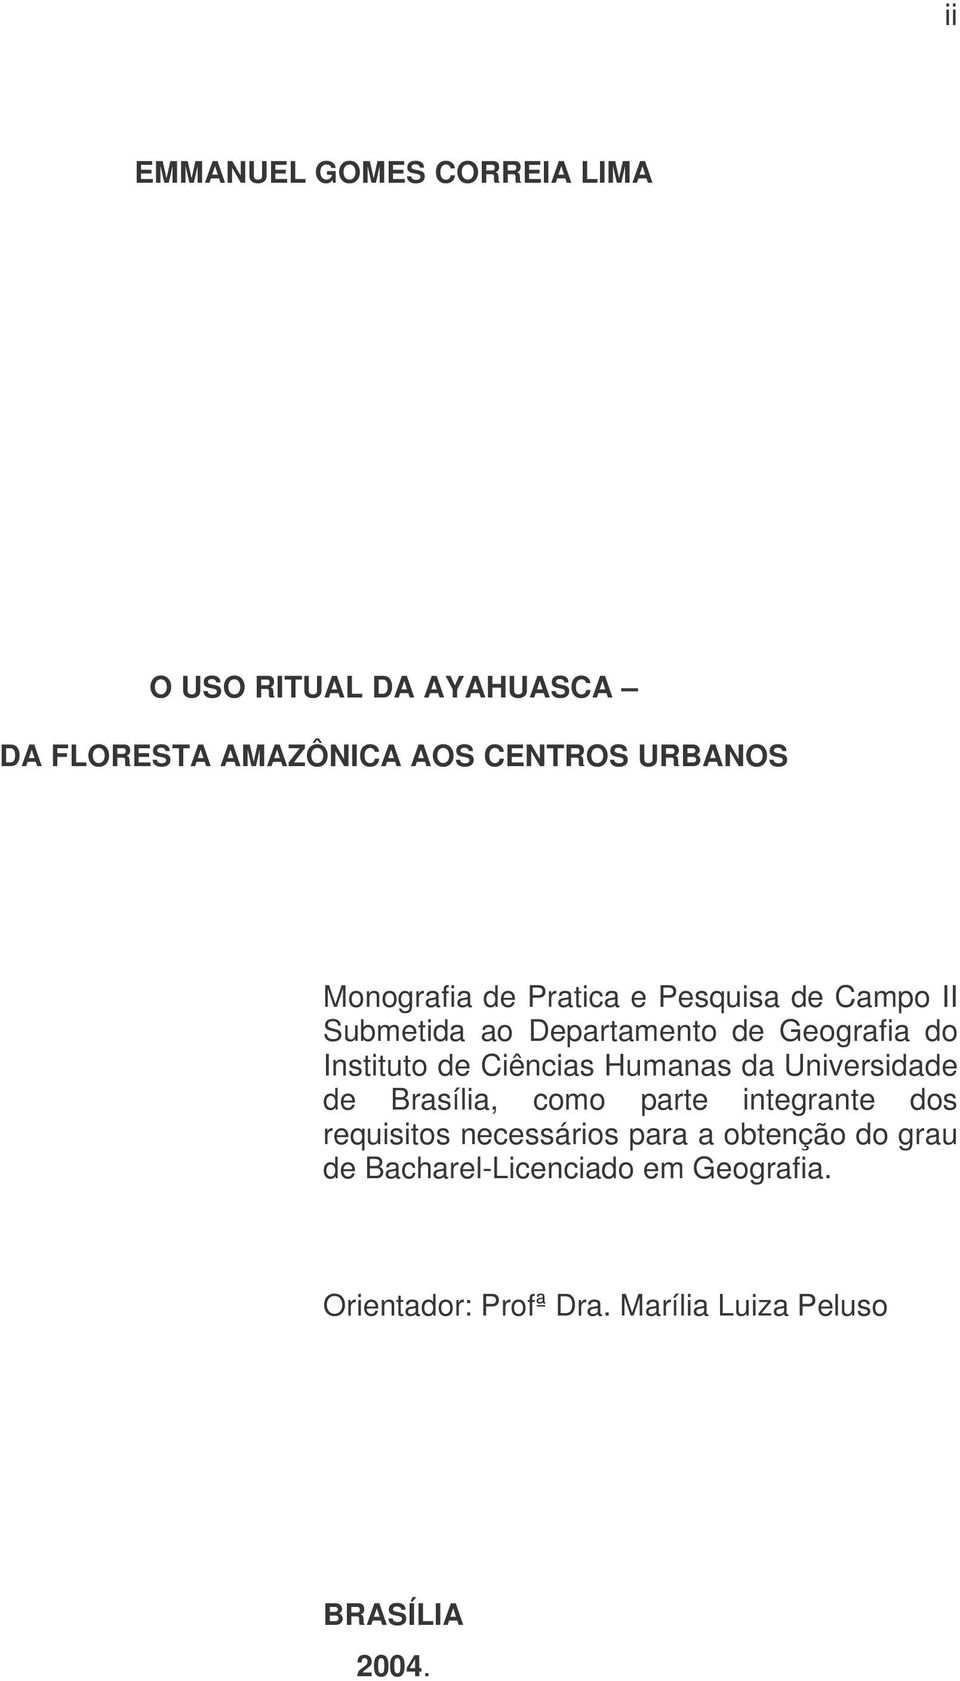 Ciências Humanas da Universidade de Brasília, como parte integrante dos requisitos necessários para a